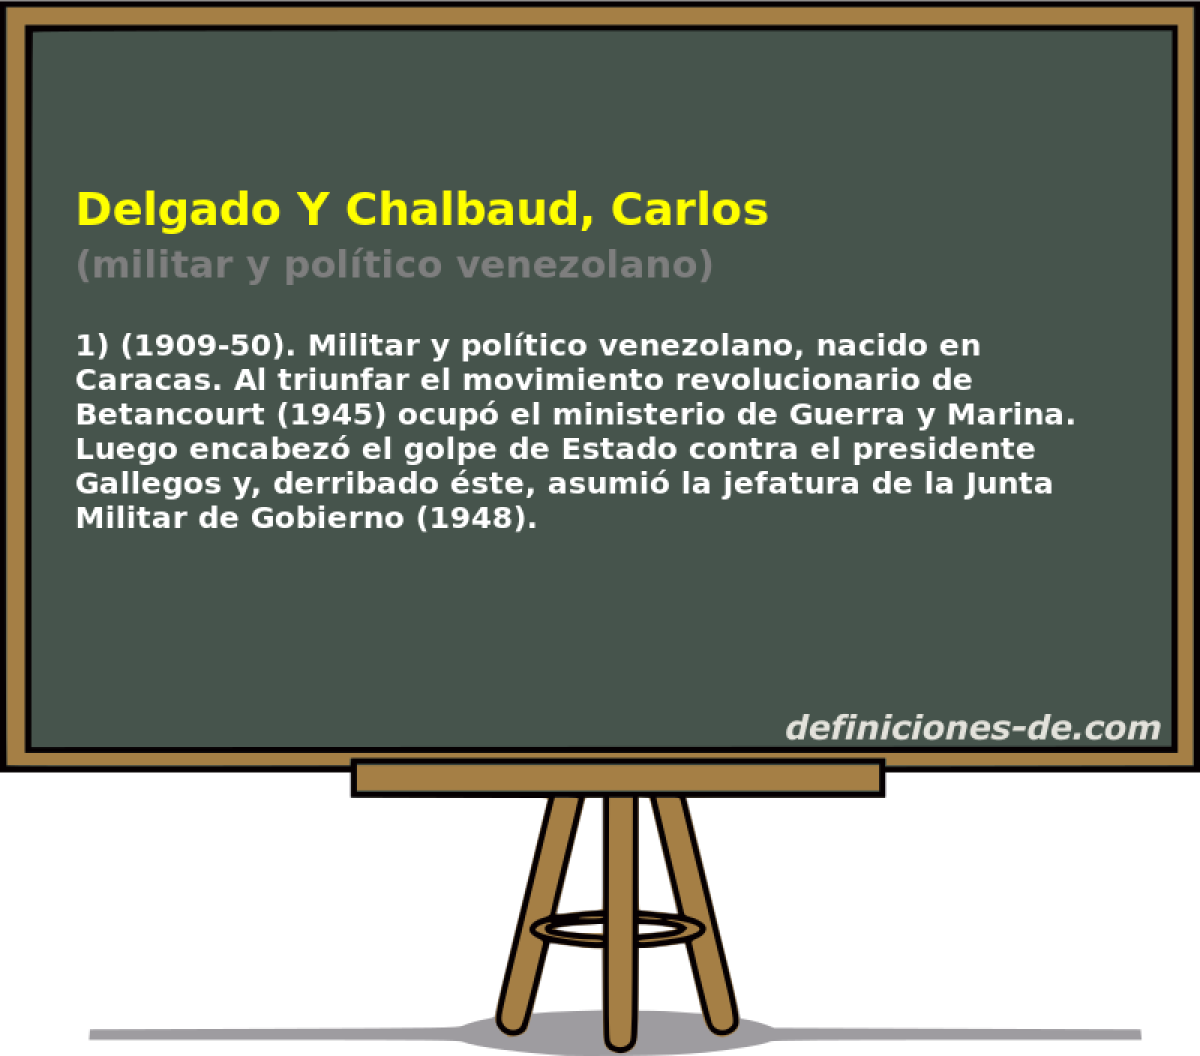 Delgado Y Chalbaud, Carlos (militar y poltico venezolano)